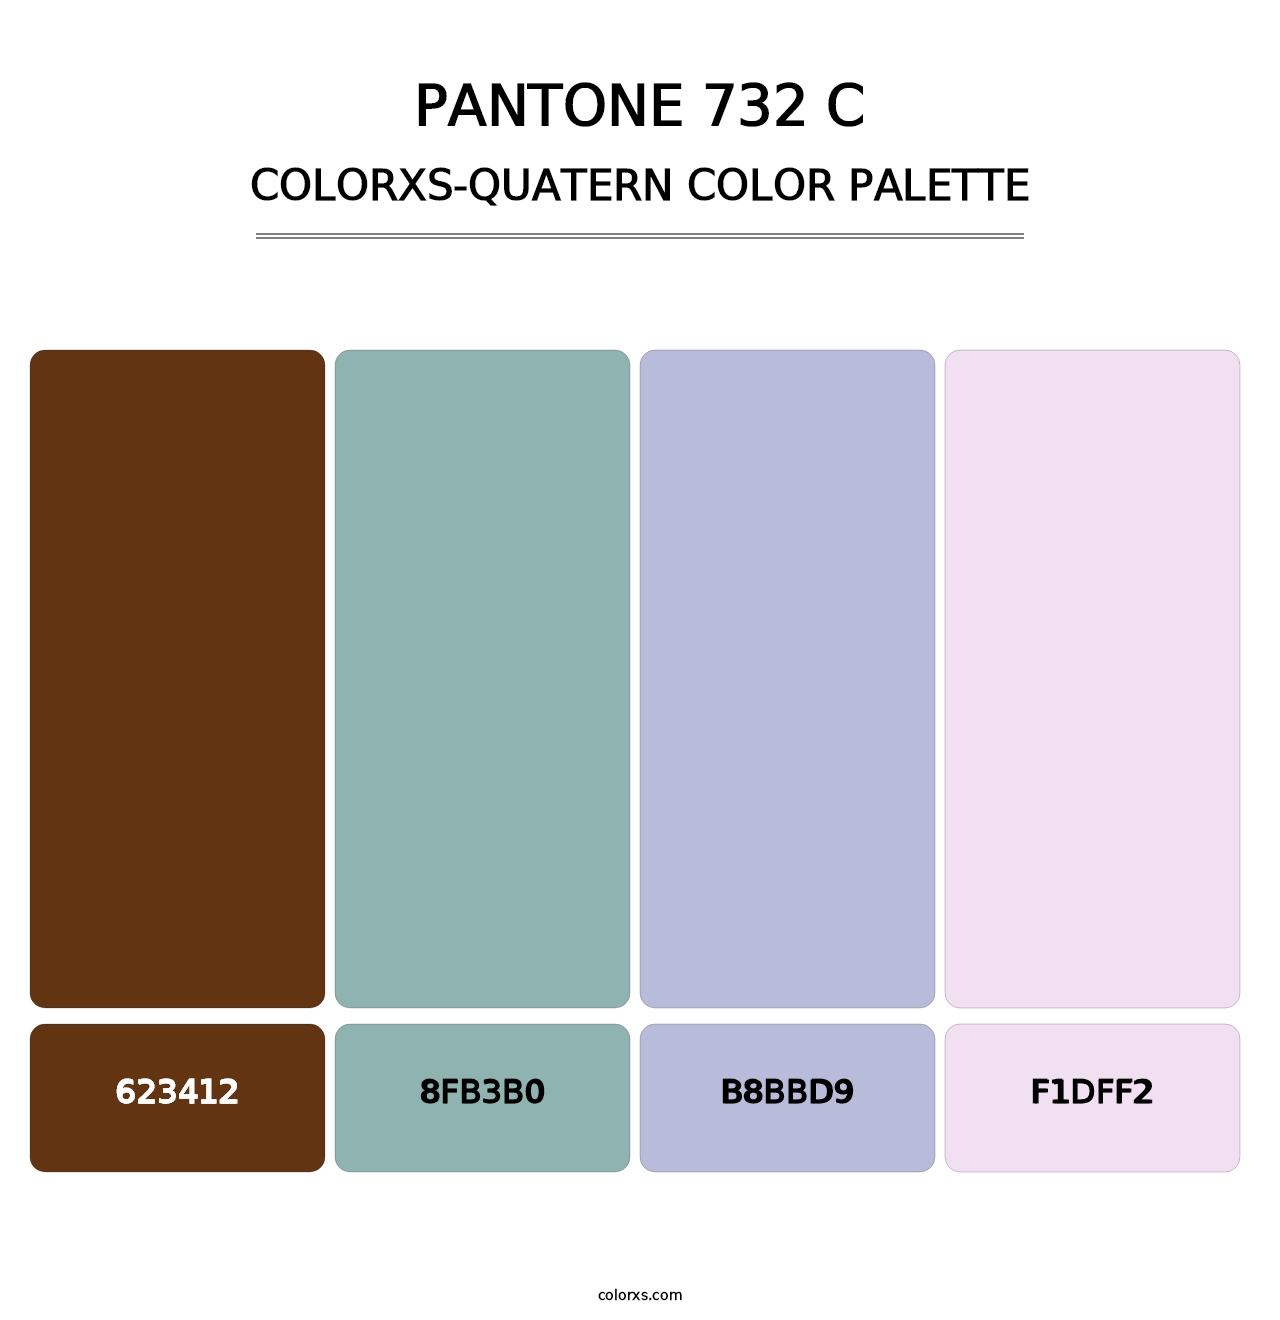 PANTONE 732 C - Colorxs Quatern Palette